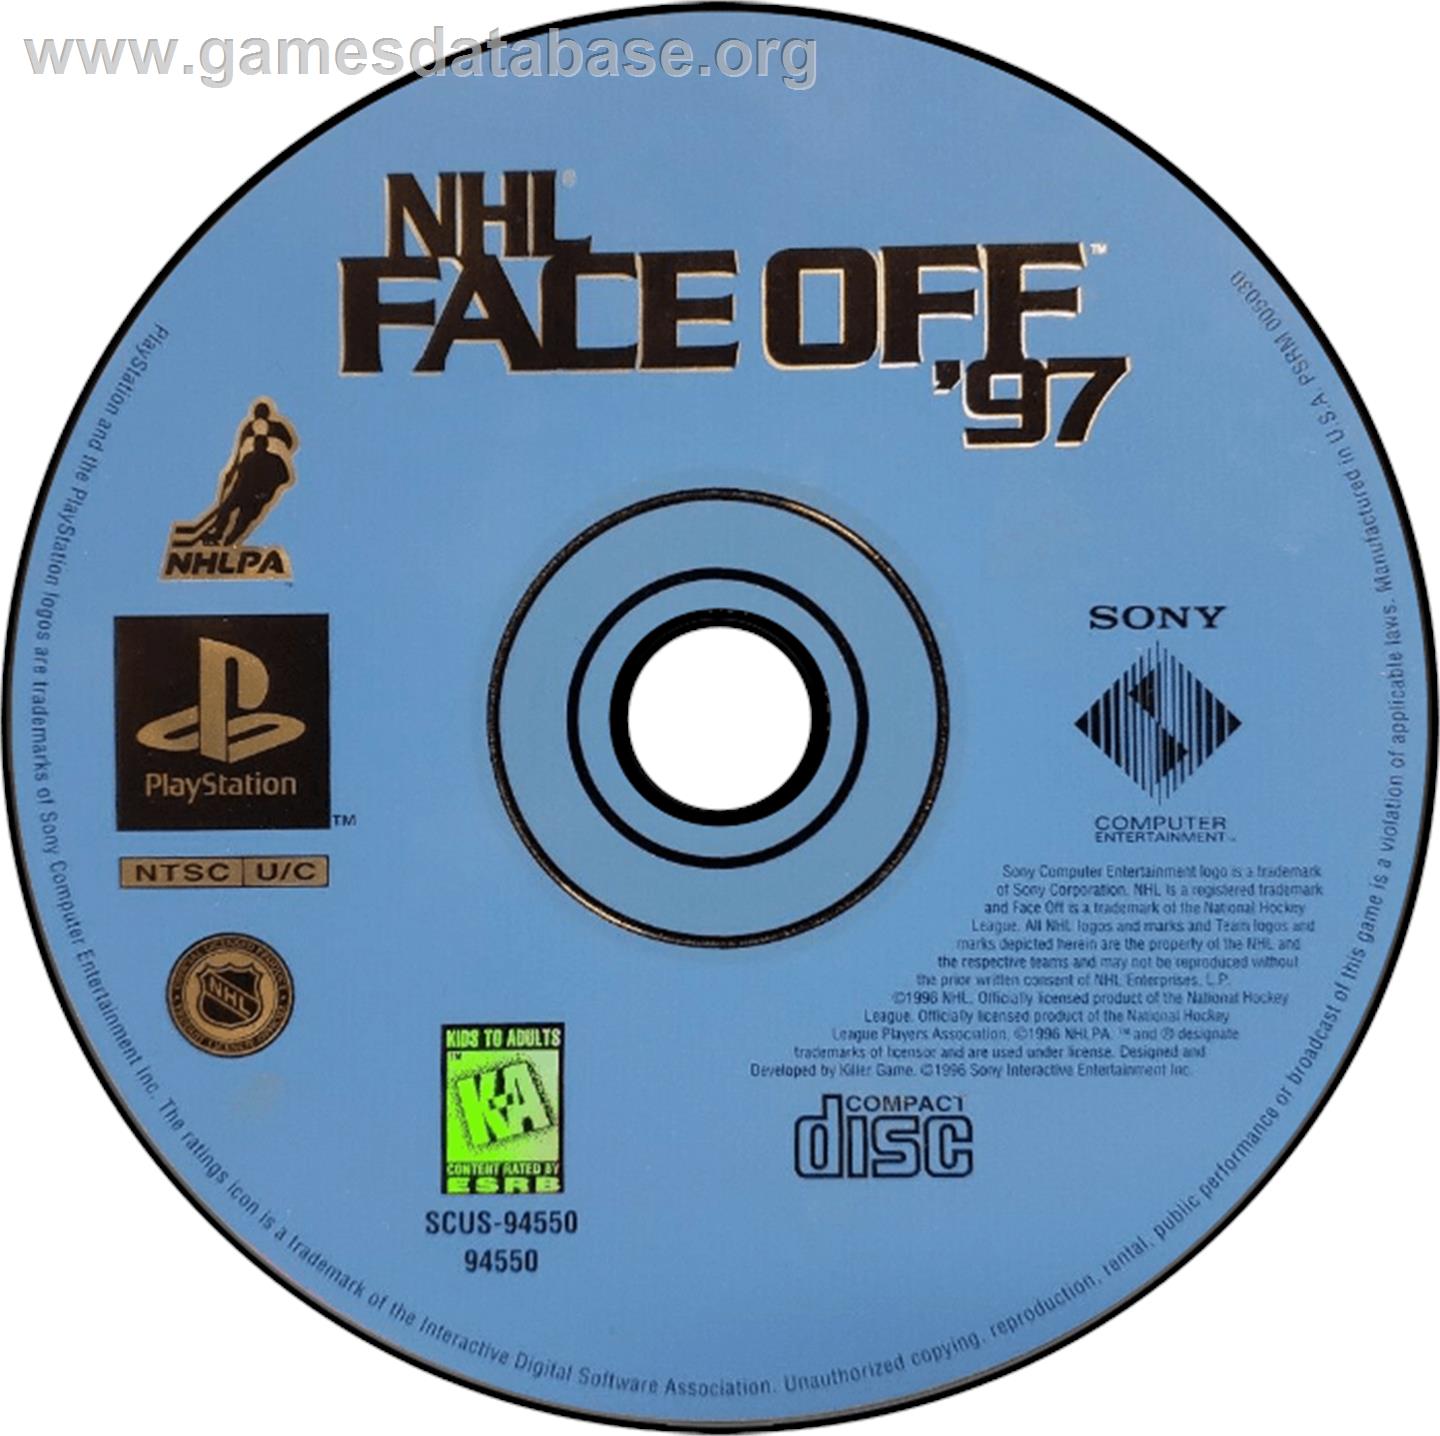 NHL FaceOff '97 - Sony Playstation - Artwork - Disc